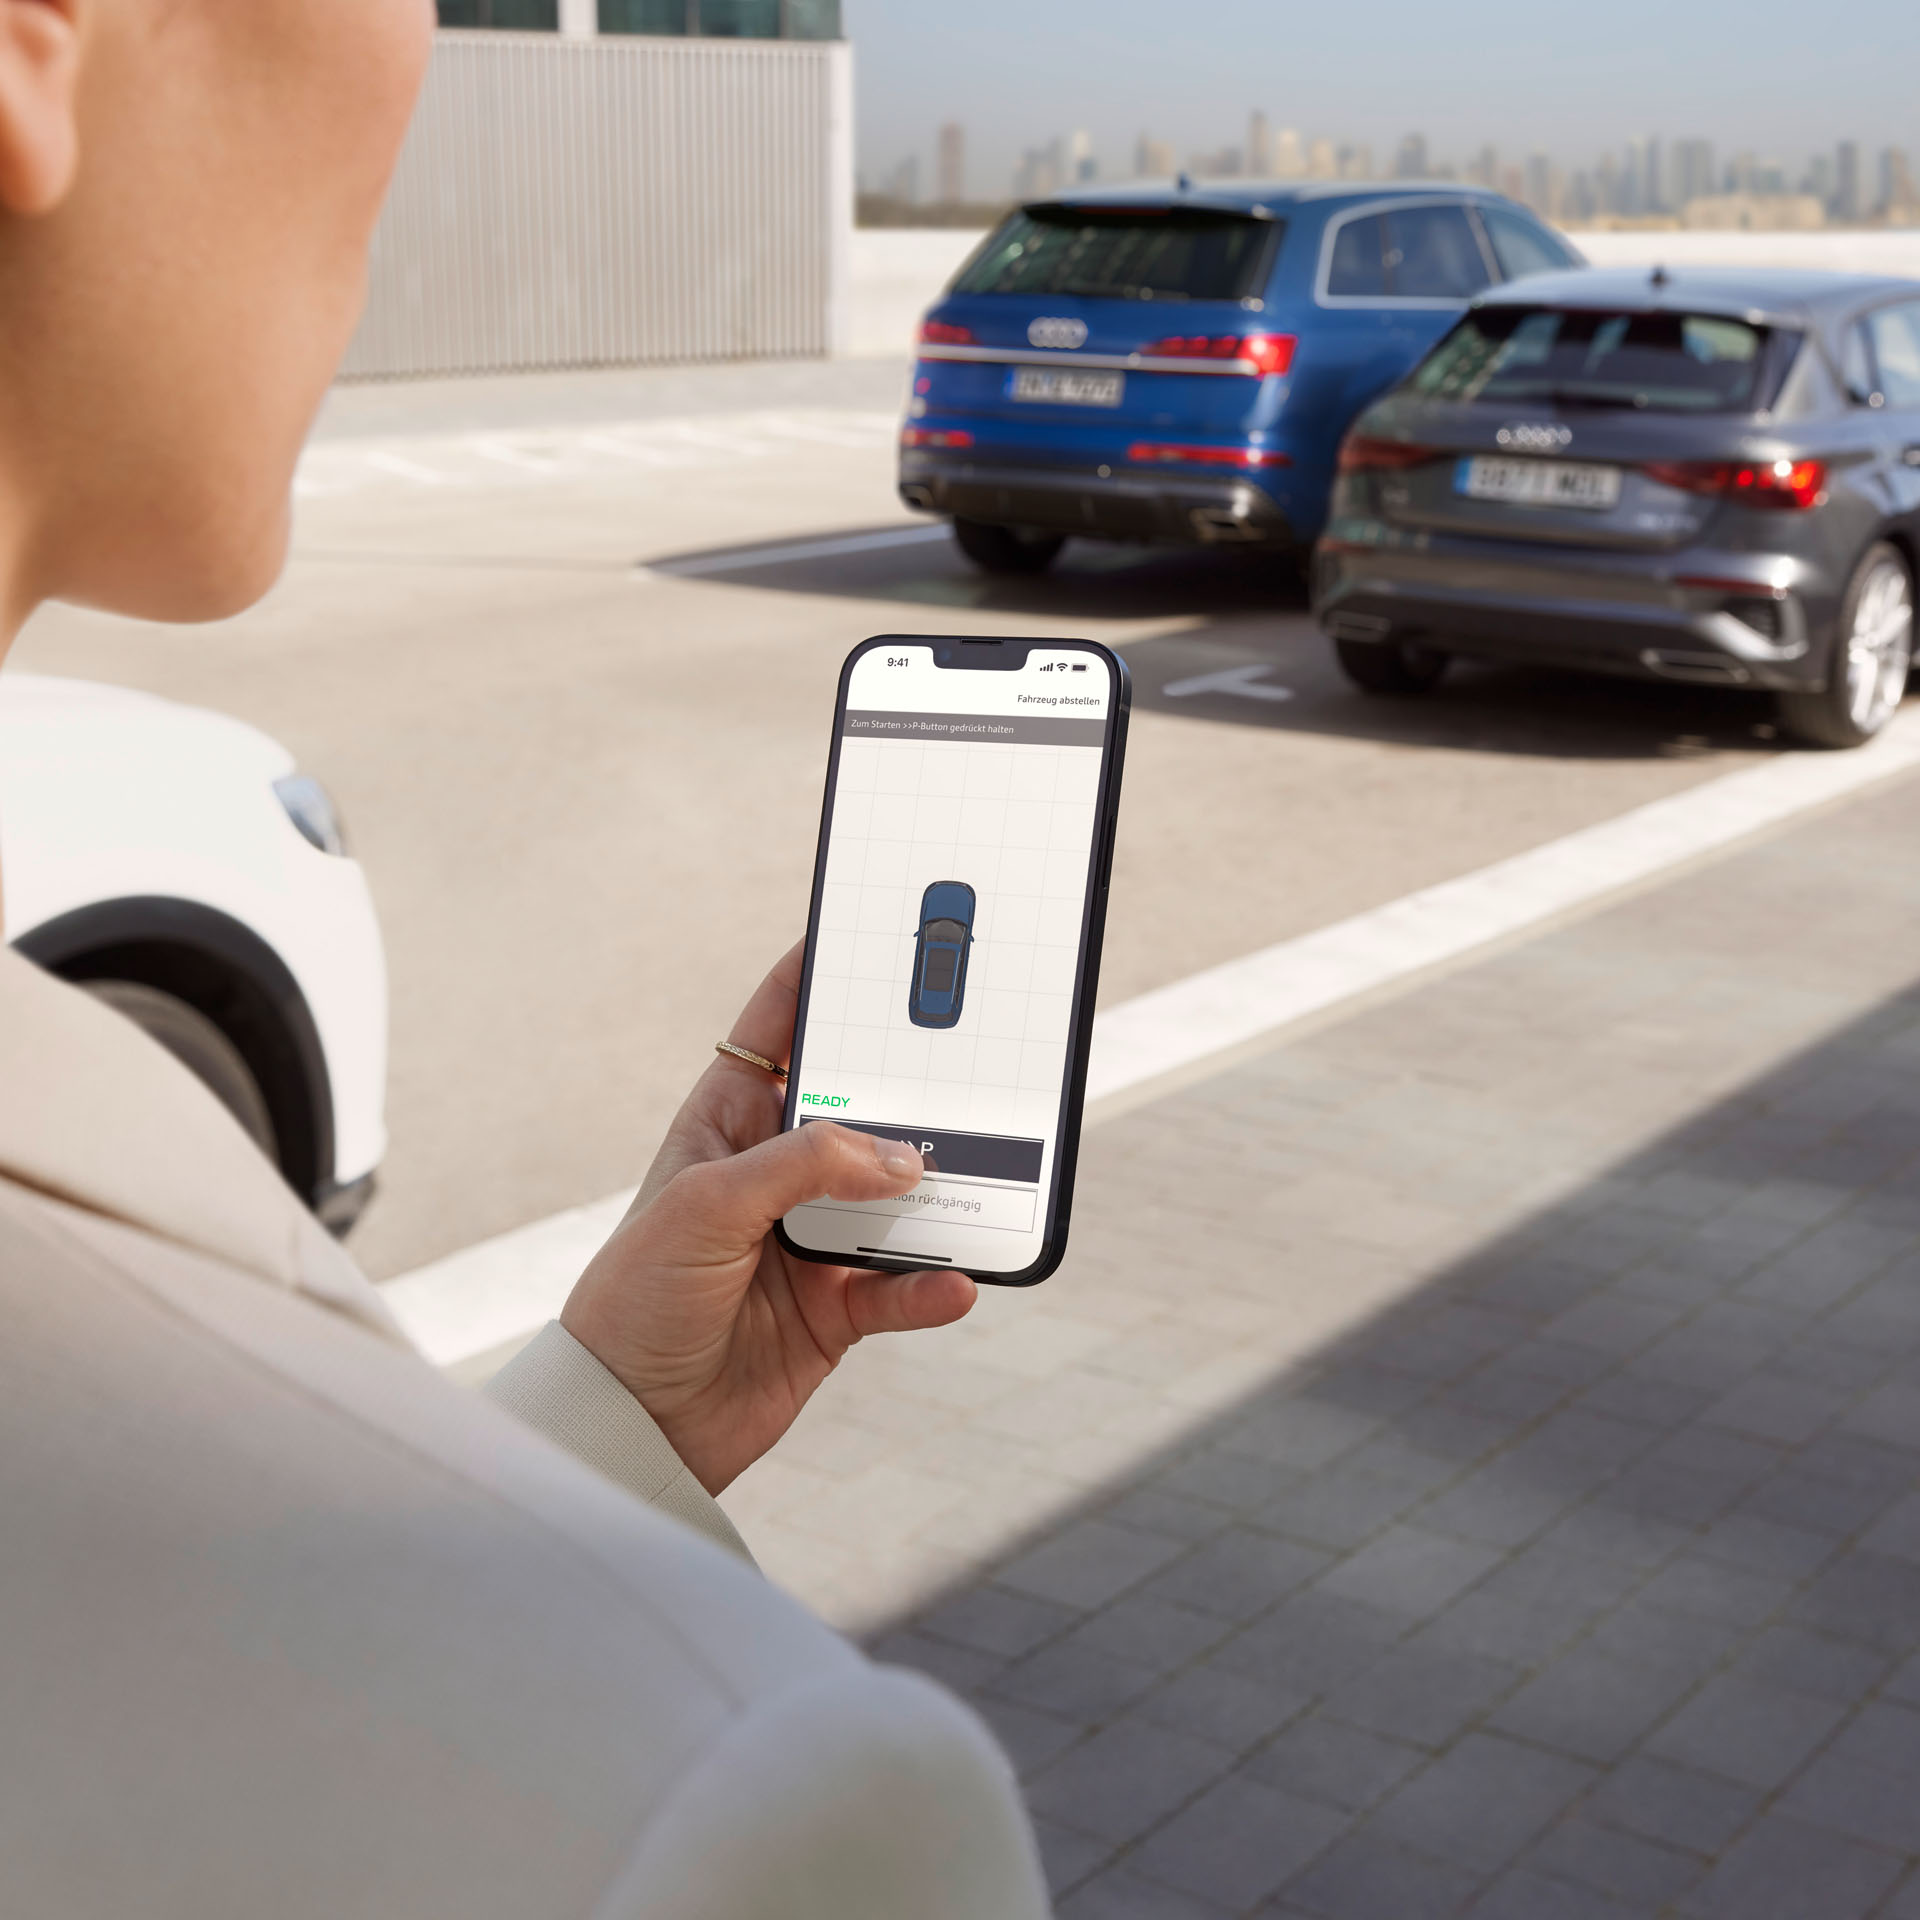 Frau hält Smartphone in der Hand und bedient den Audi Remote Parkassistenten